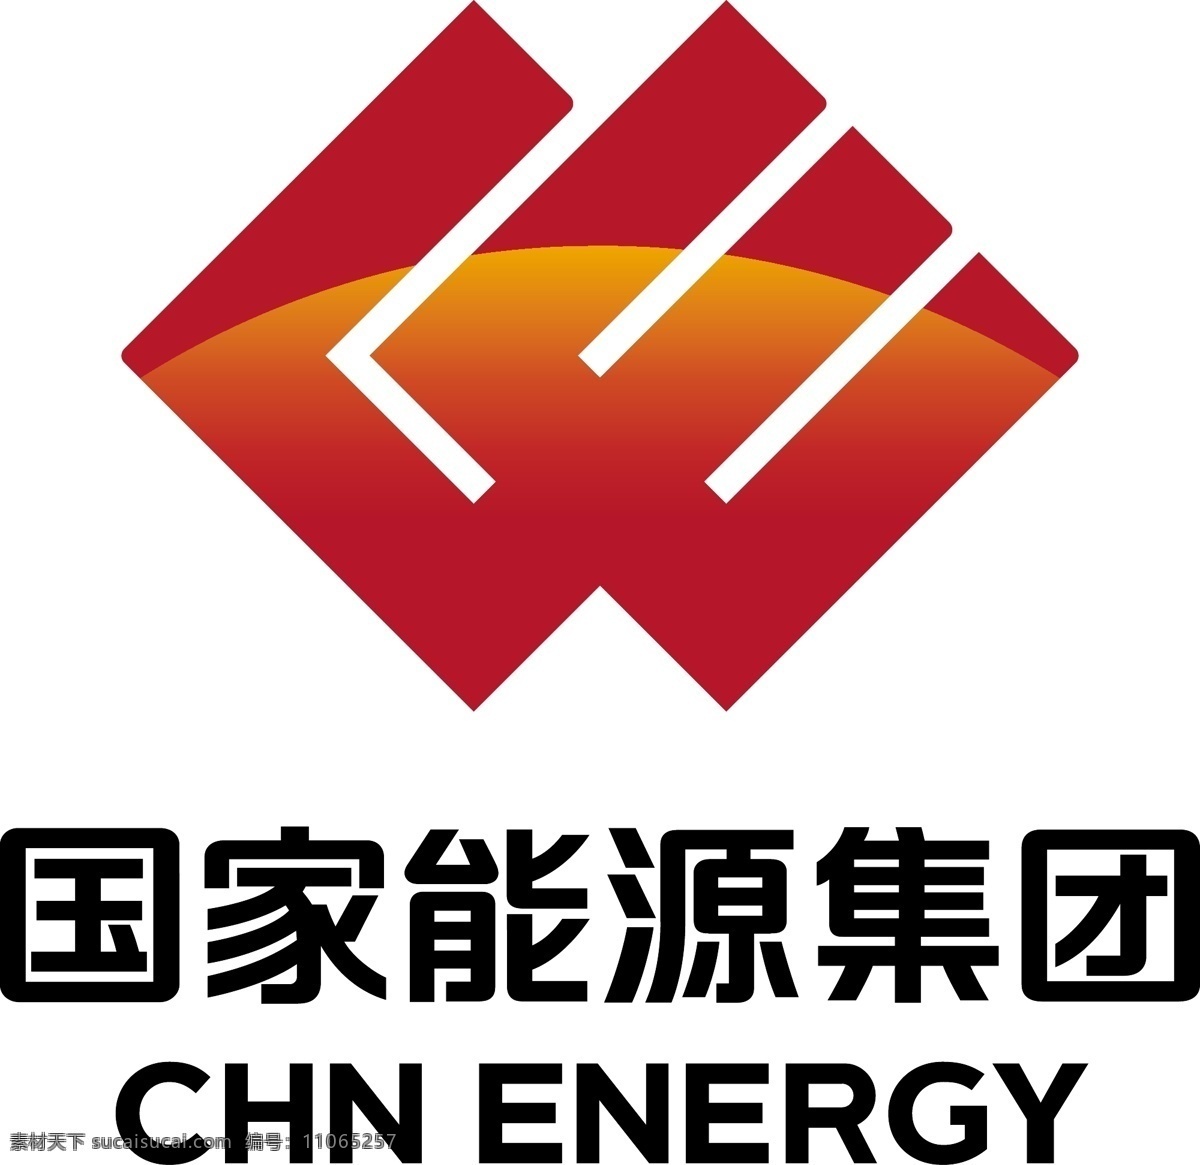 国家 能源 集团 国家能源集团 国能logo 国能标志 神东logo 国家能源